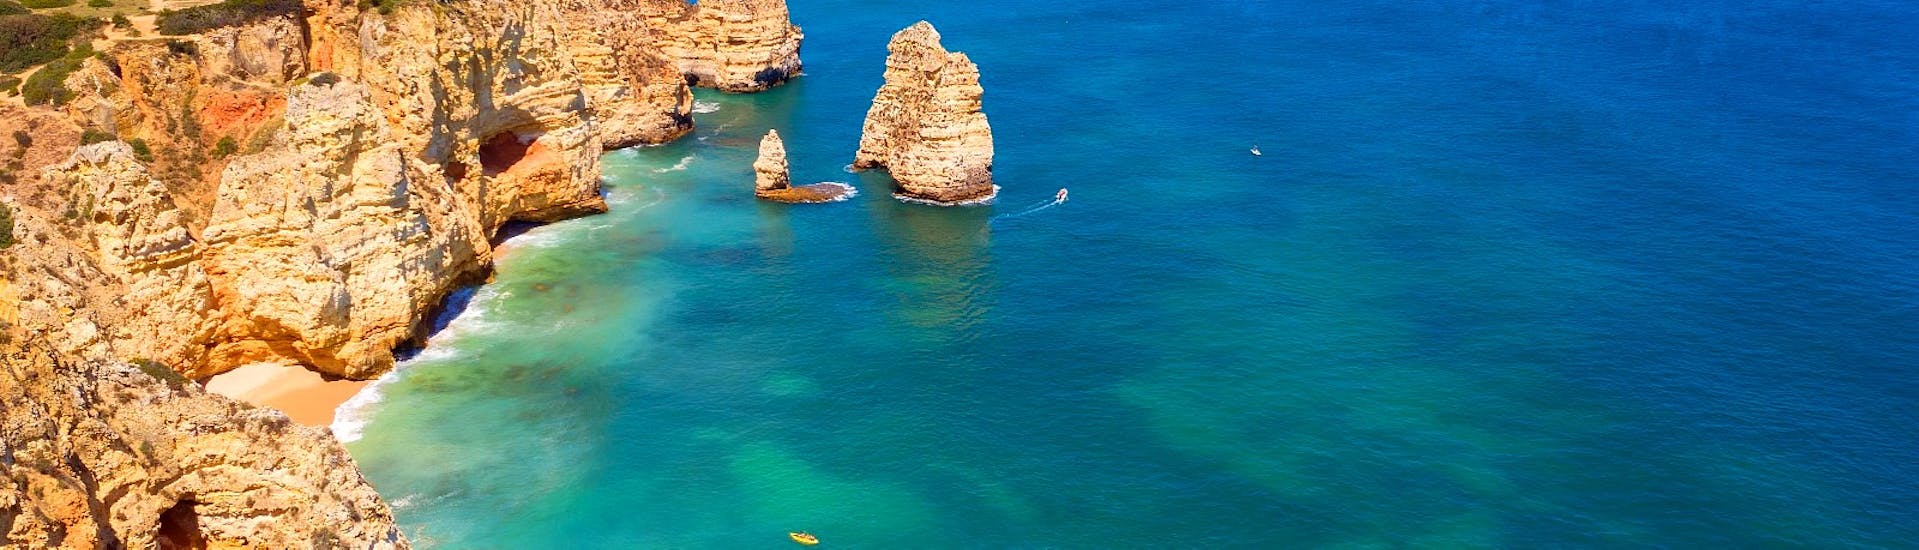 La hermosa vista de algunas cuevas y grutas a lo largo de la costa del Algarve durante un romántico viaje privado en barco al atardecer desde Lagos con Funtastik Tours Lagos.